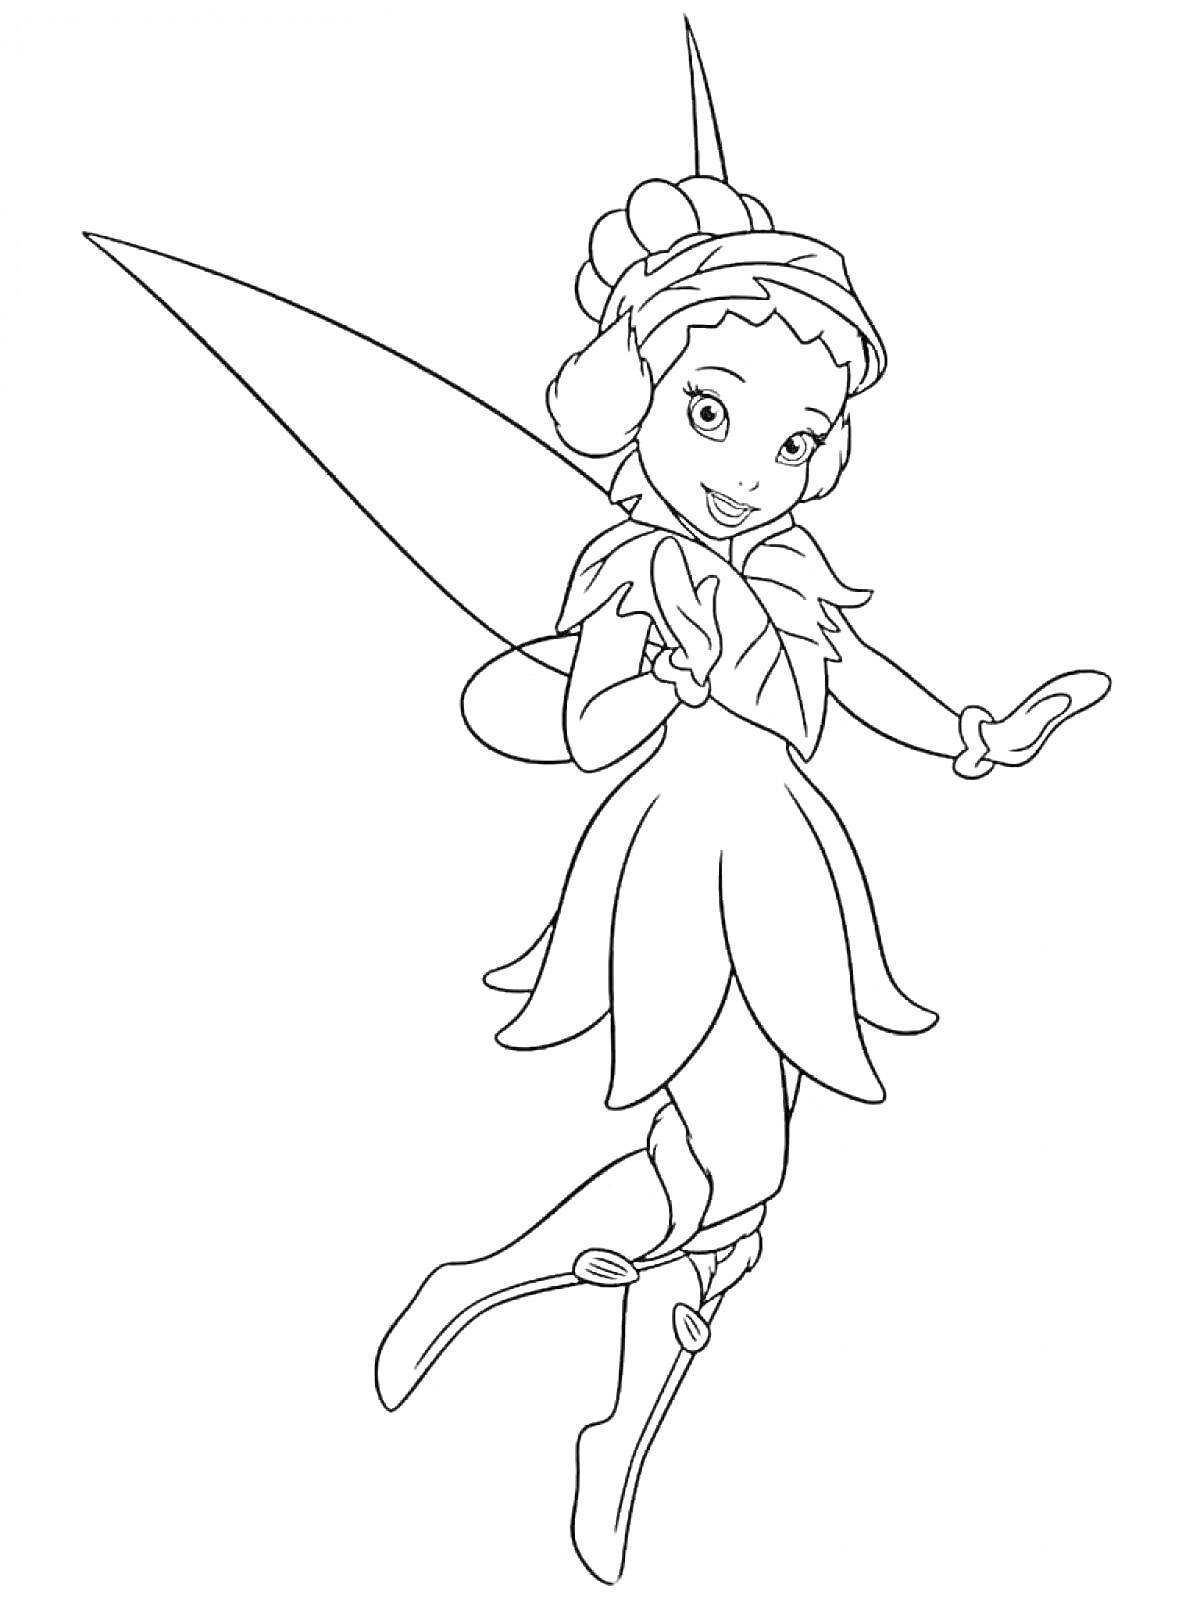 Раскраска Фея Динь-Динь с крыльями и в платье, позирует в прыжке